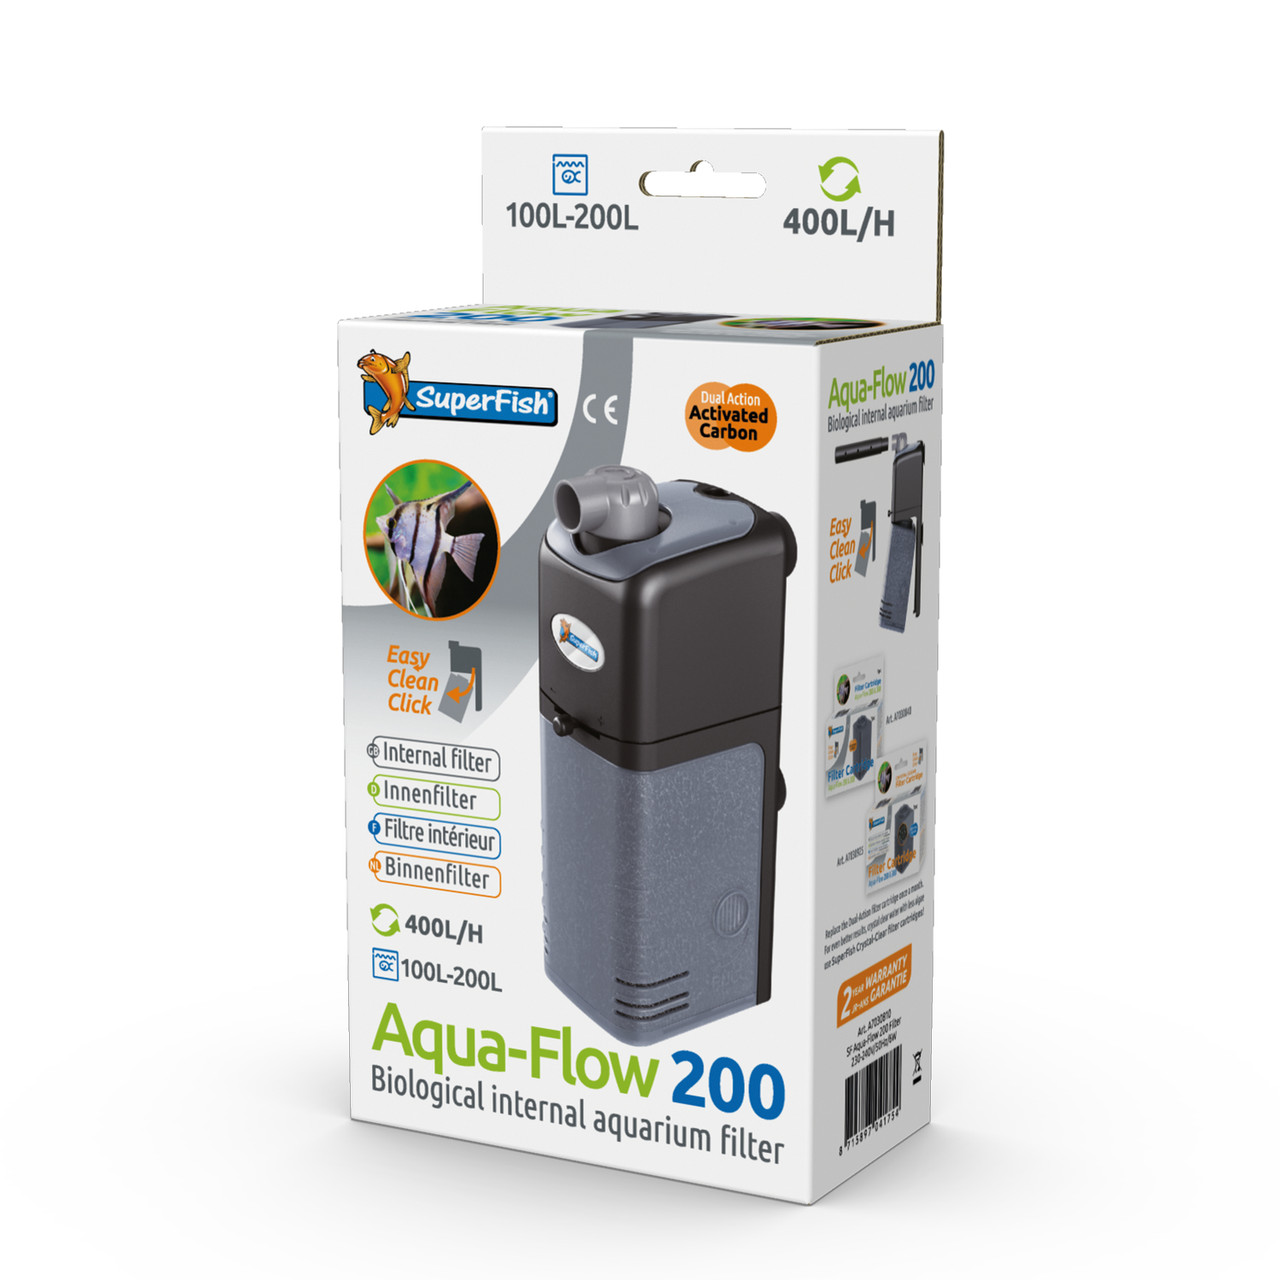 Superfish aquaflow 200 aquarium filter boxed